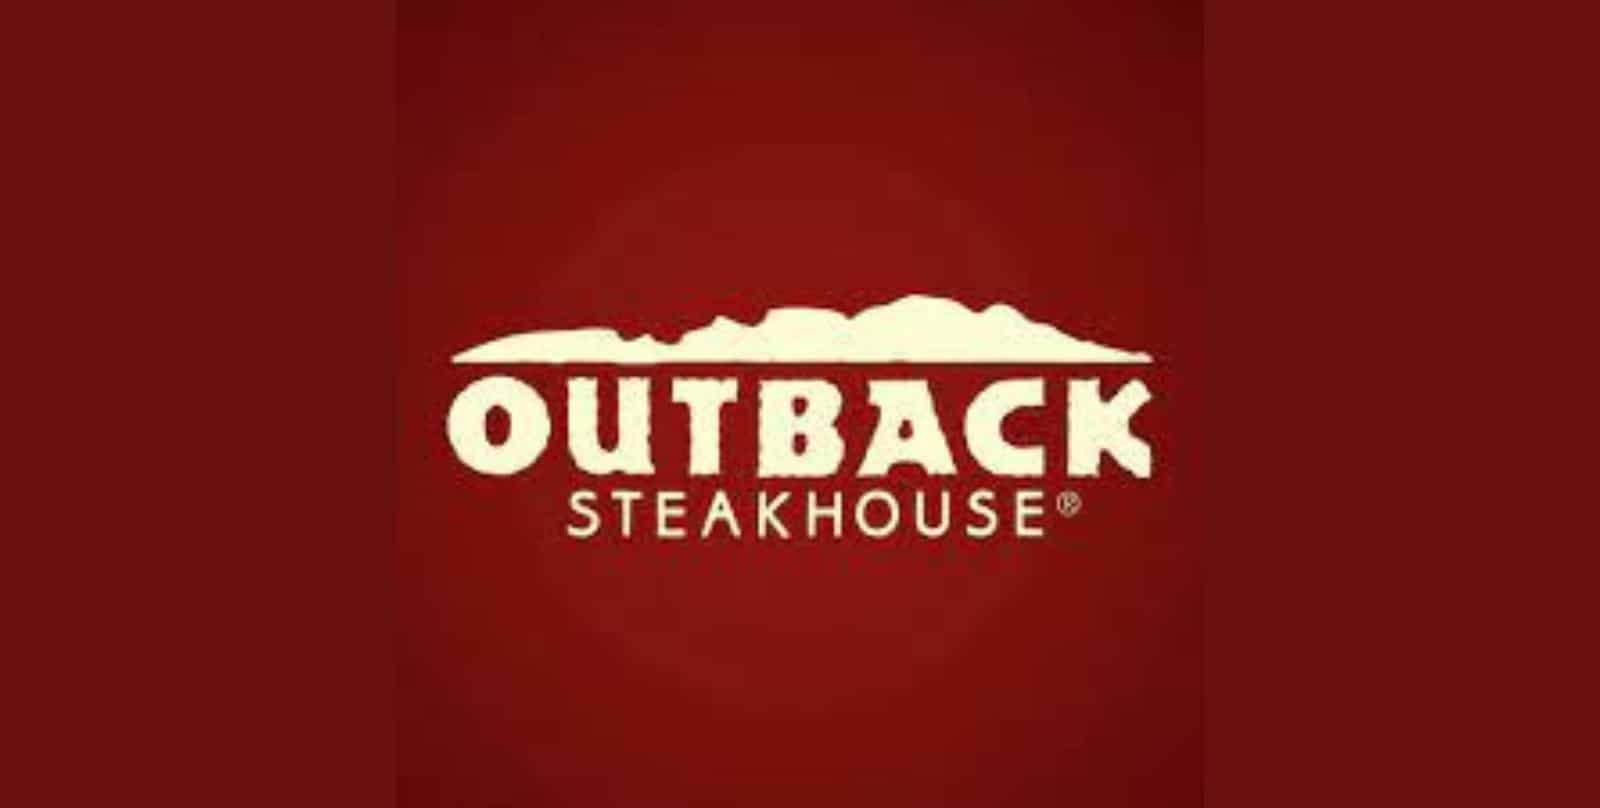 Outback Steakhouse Menu Prices Australia